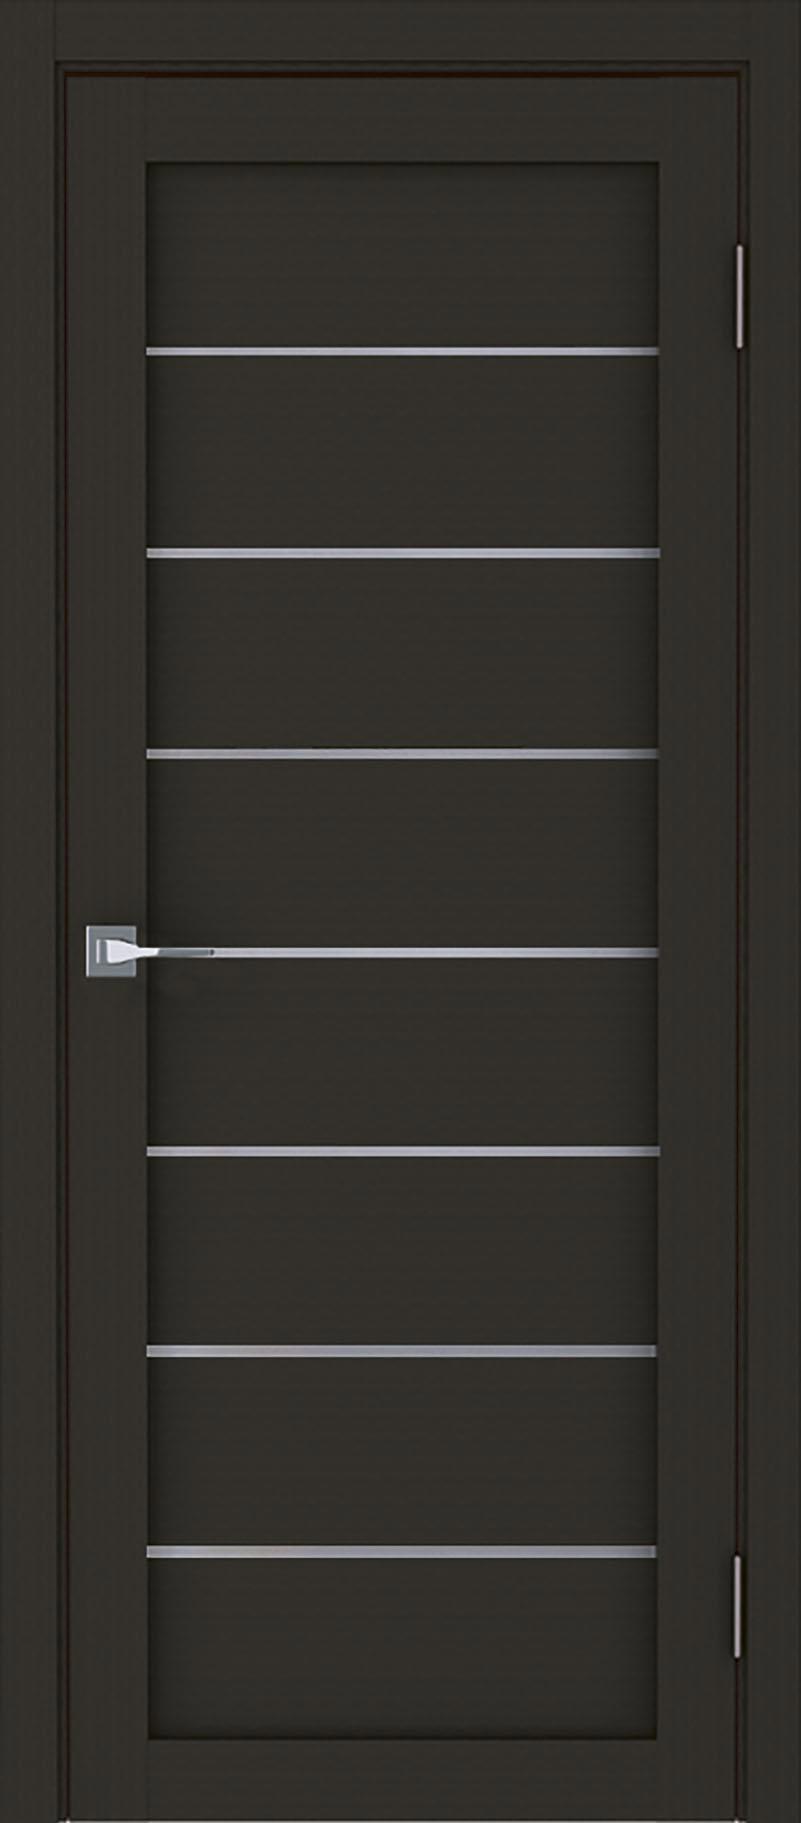 90903185 Межкомнатная дверь Модерн 10005 остеклённая без замка и петель в комплекте 200x70см каштан STLM-0420011 UBERTURE